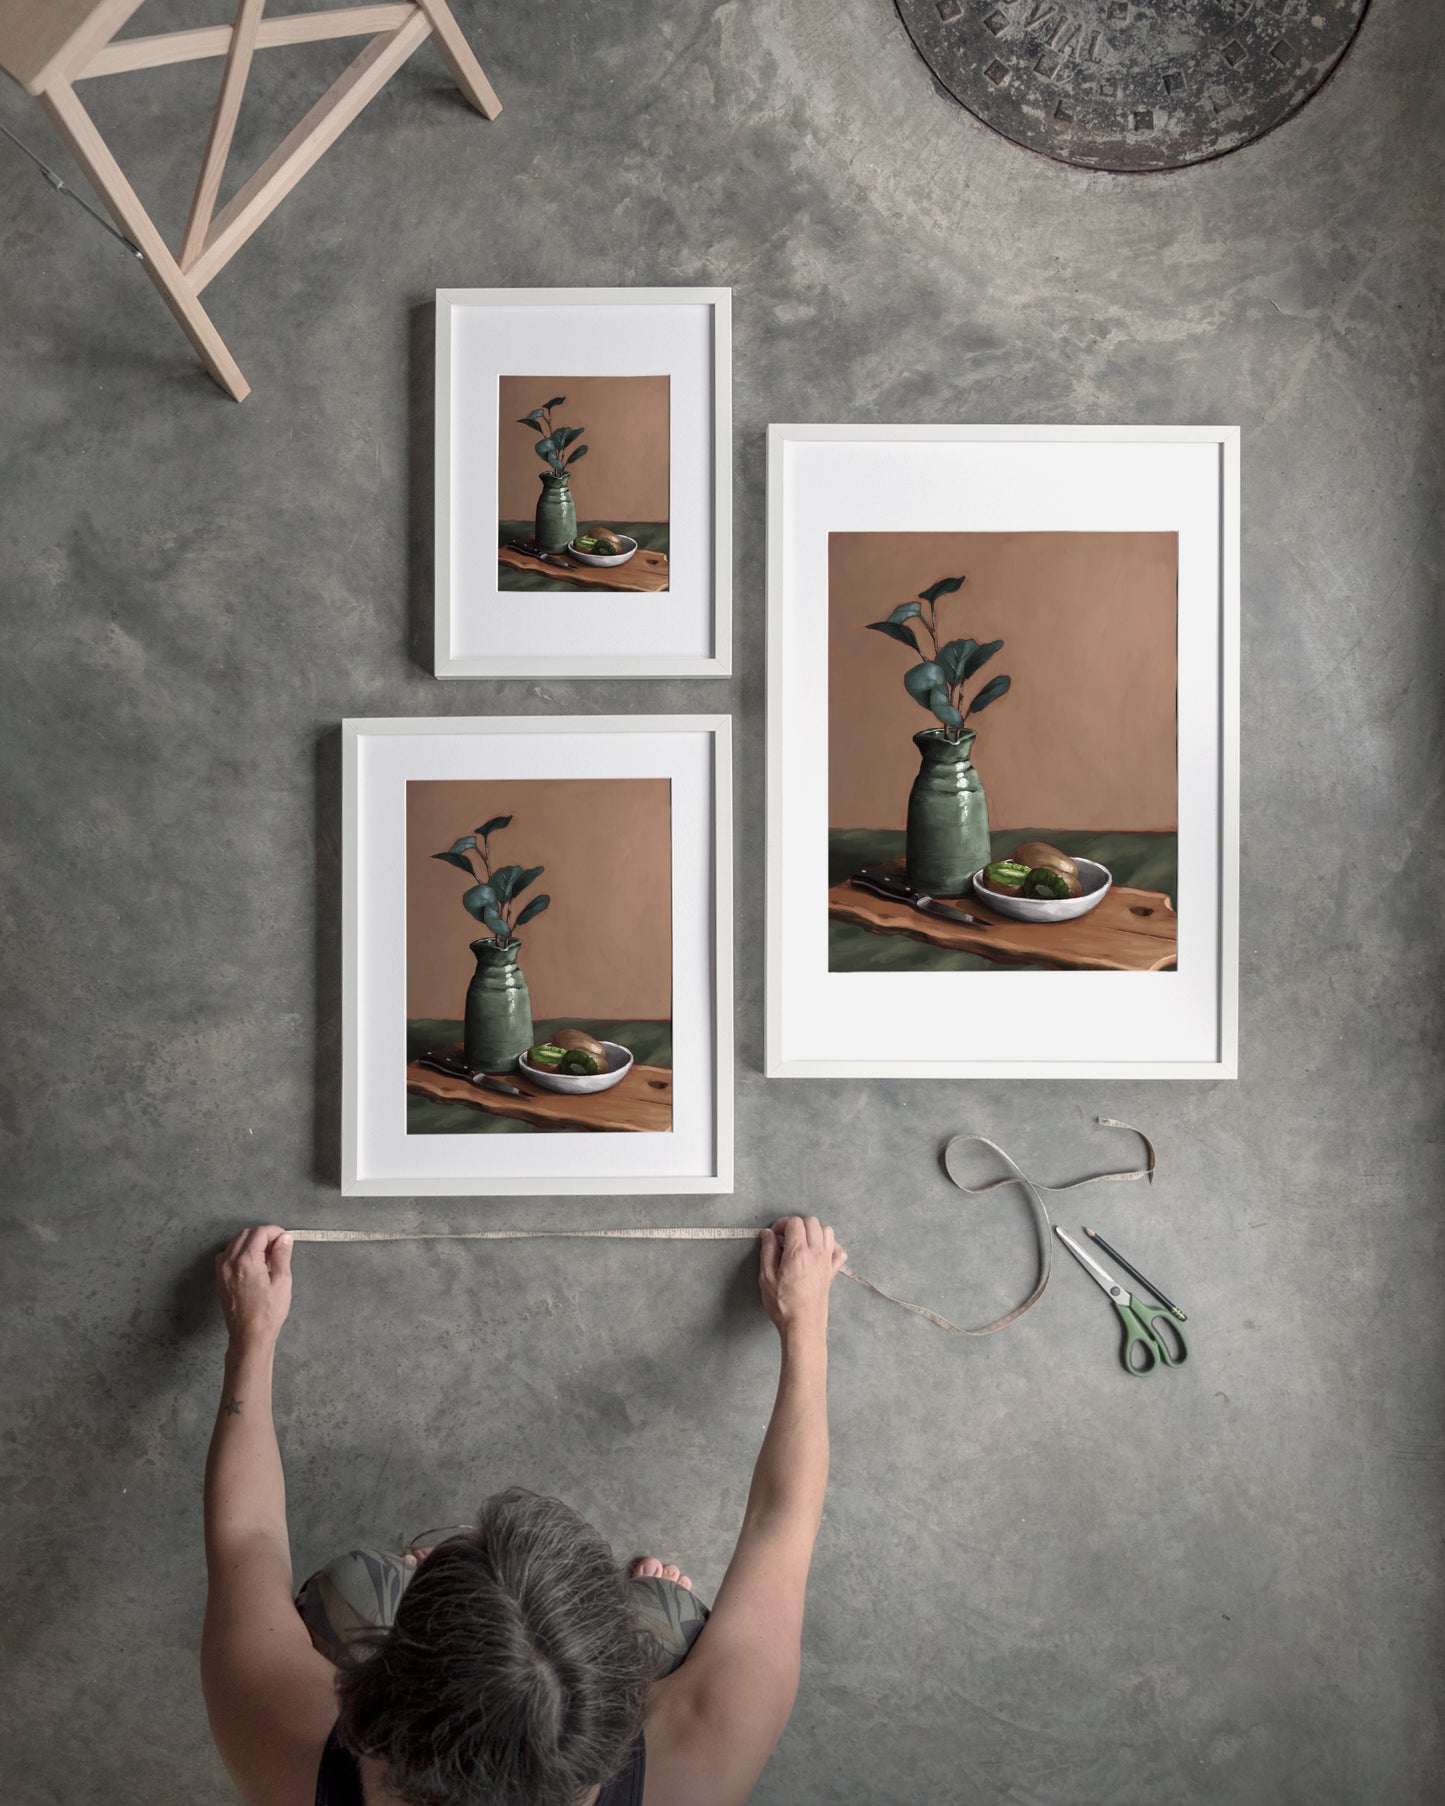 "Eucalyptus and Kiwi" by Catherine Hébert - Eucalyptus and Kiwi Still Life Art Print